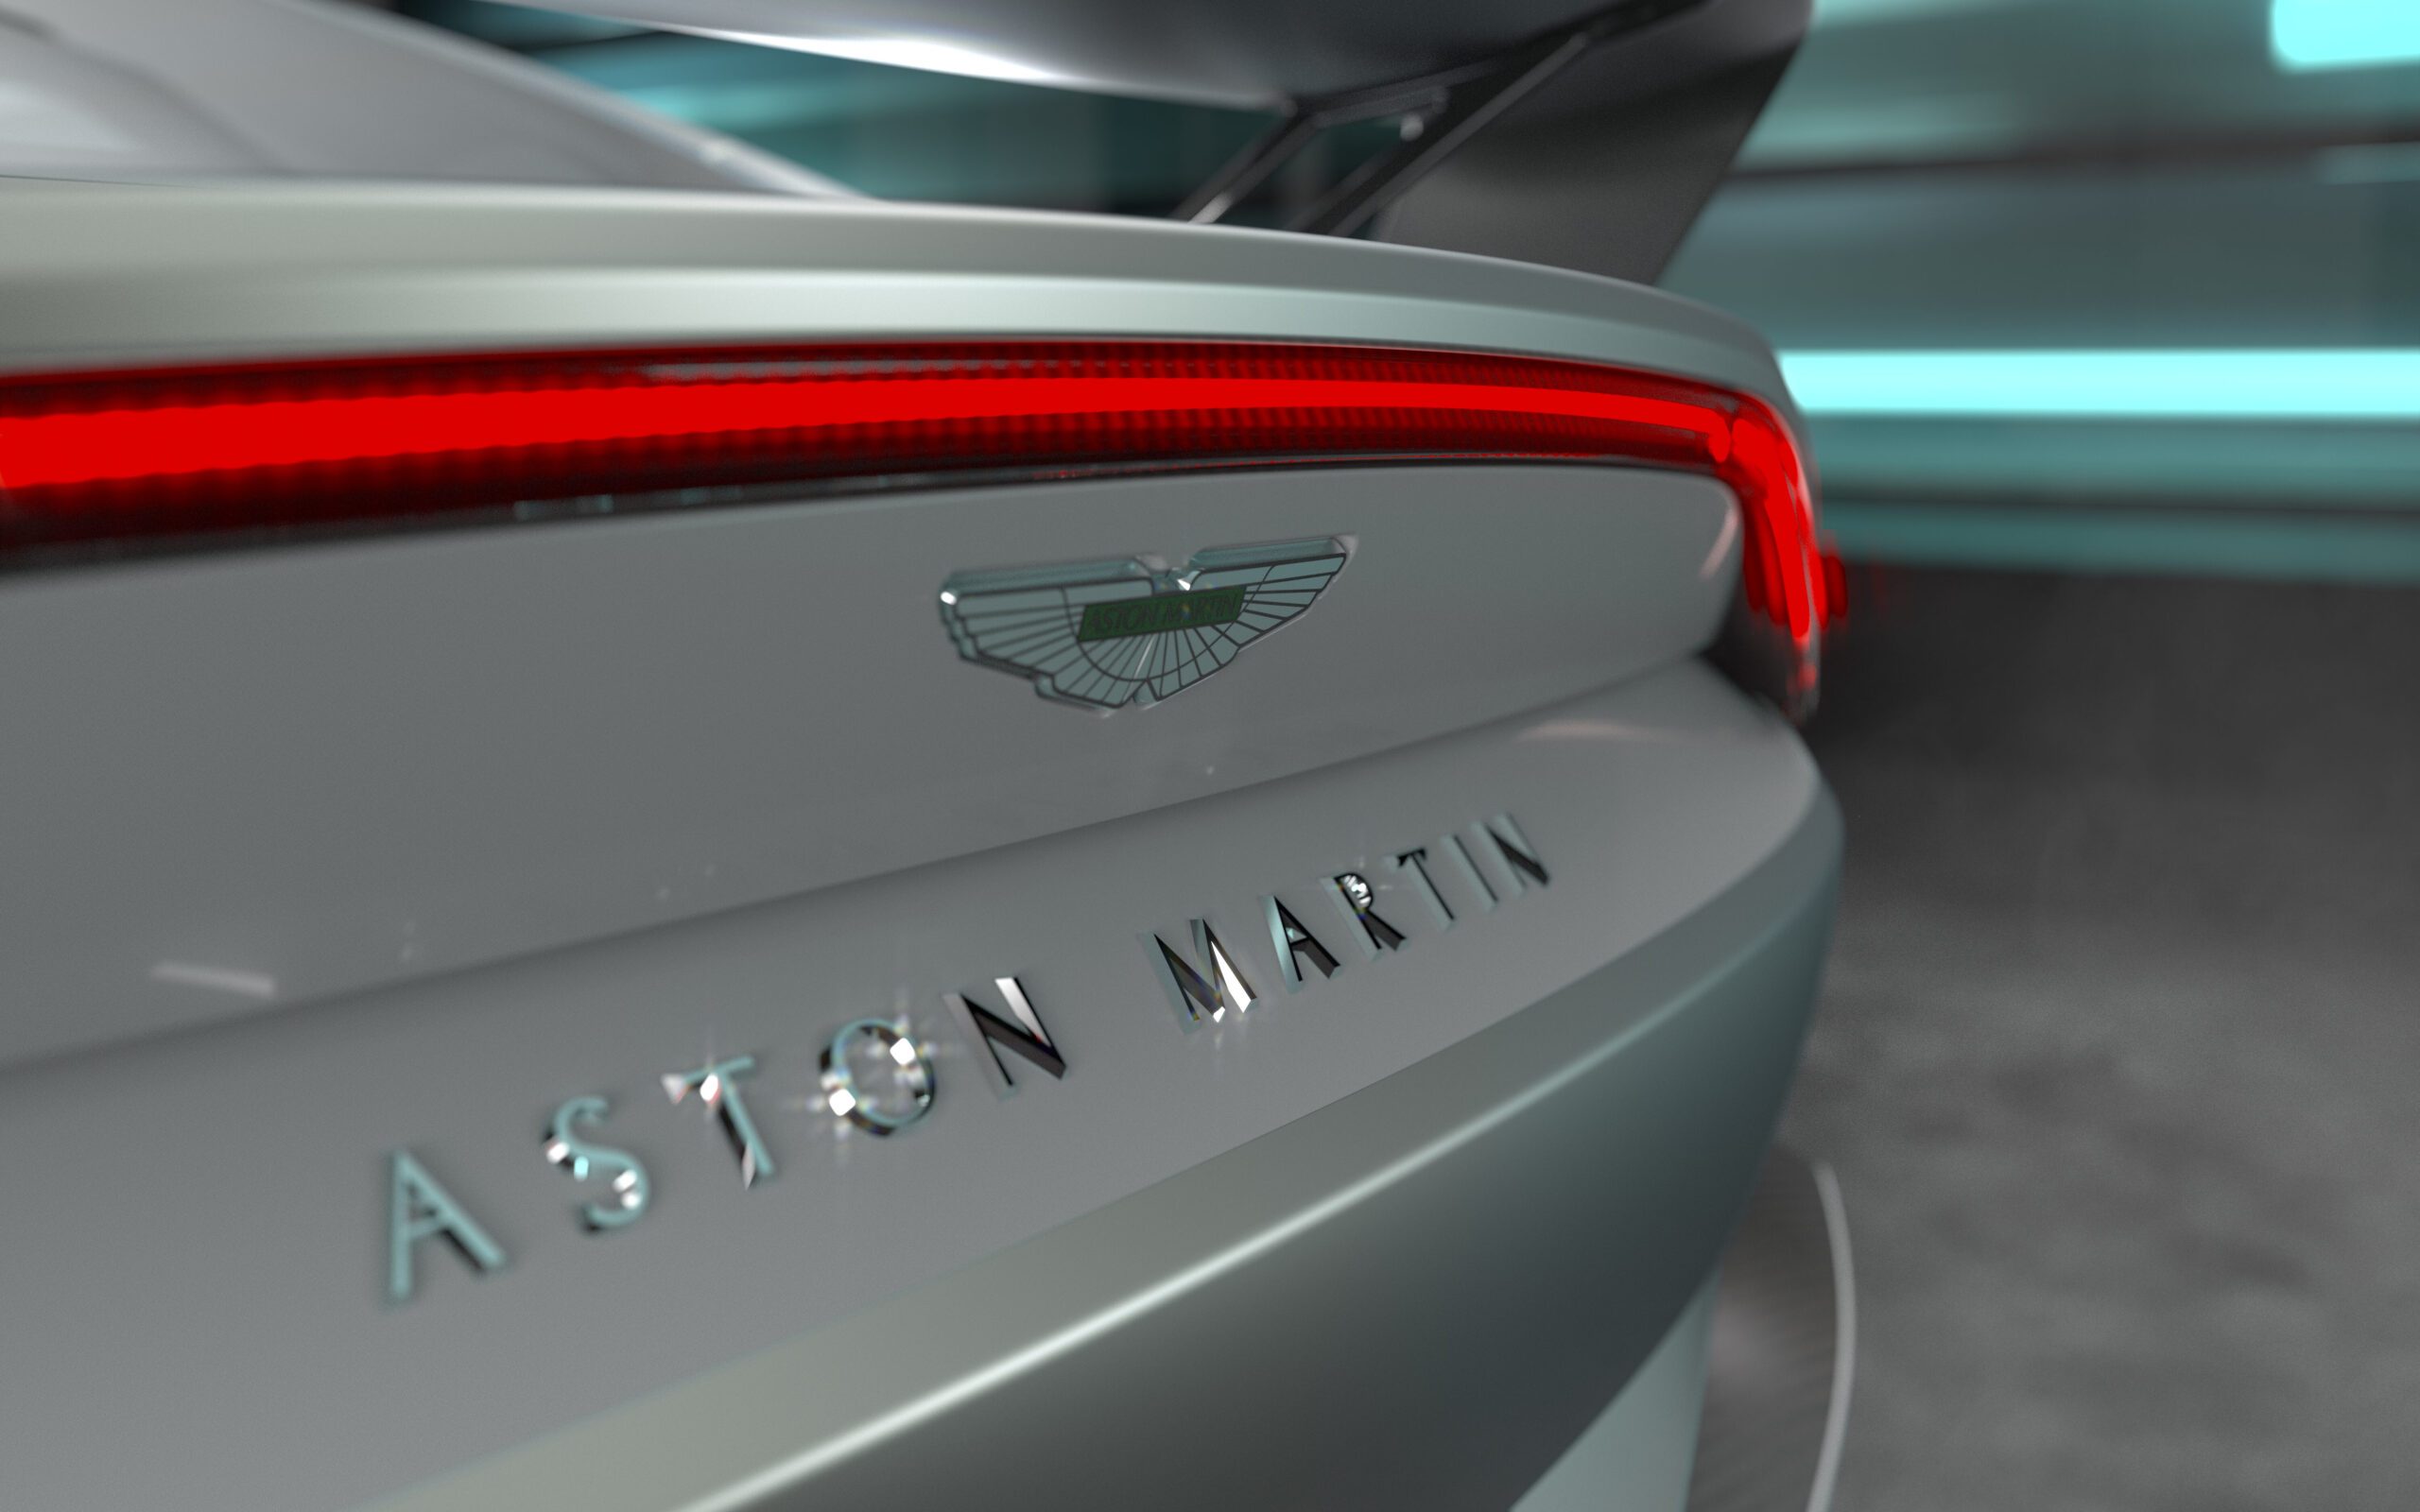 Aston Martin V12 Vantage rear badge close up view